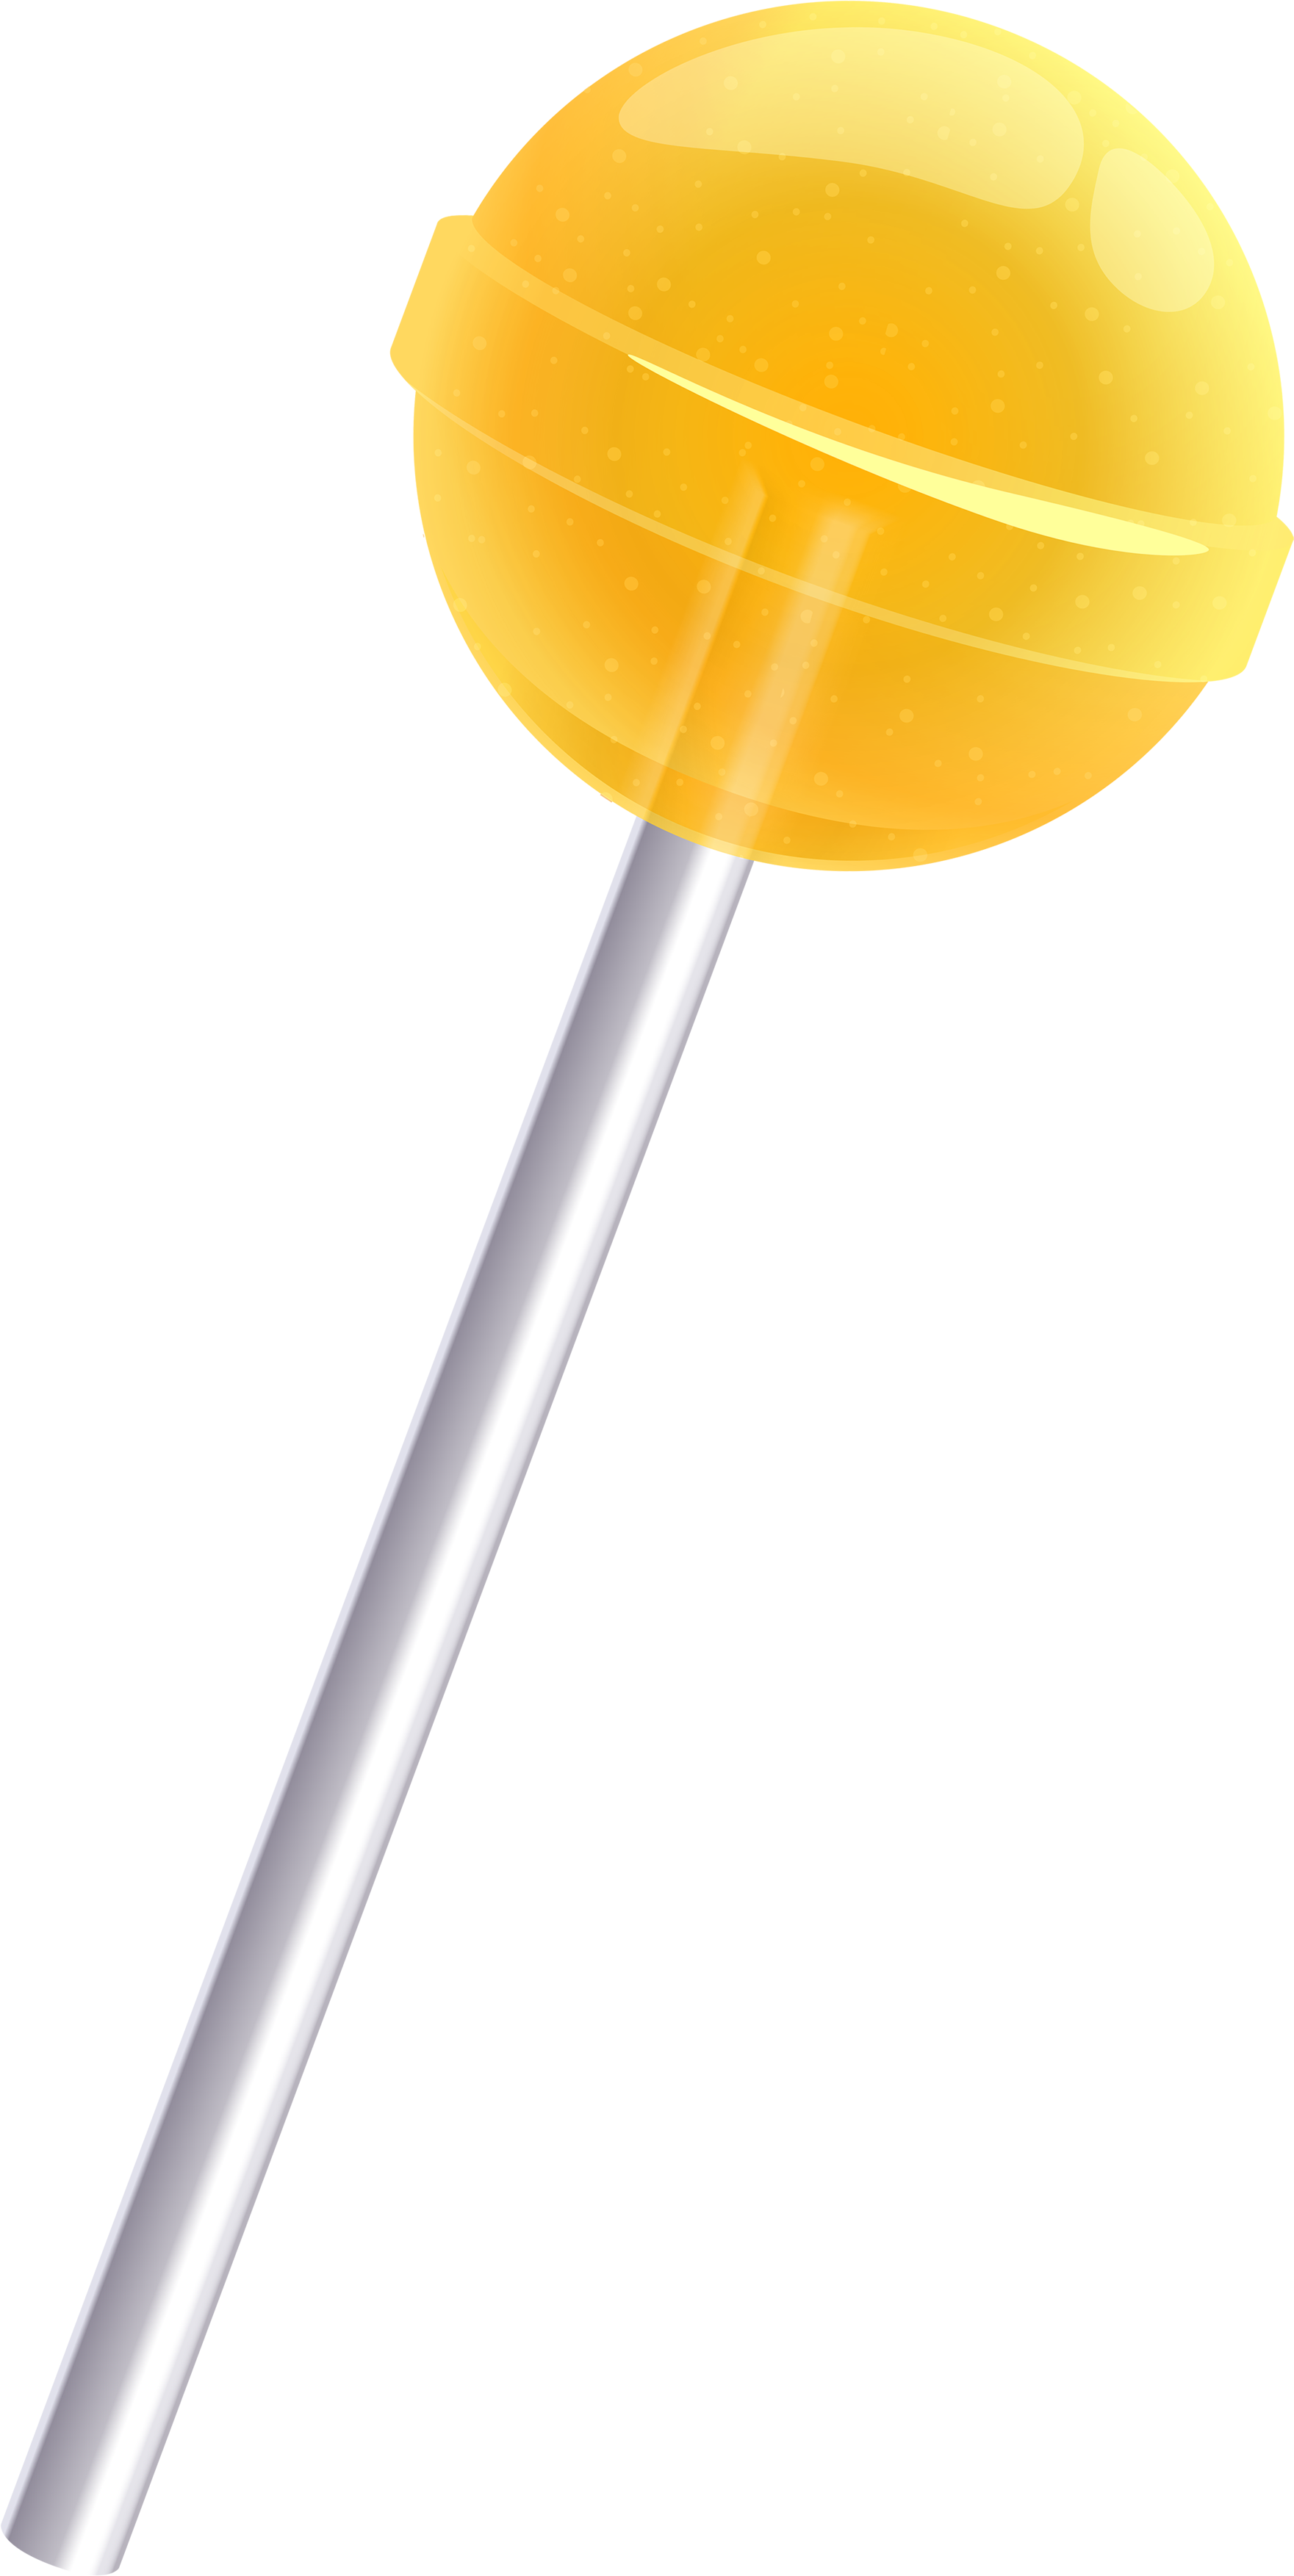 Lollipop PNG HD Quality